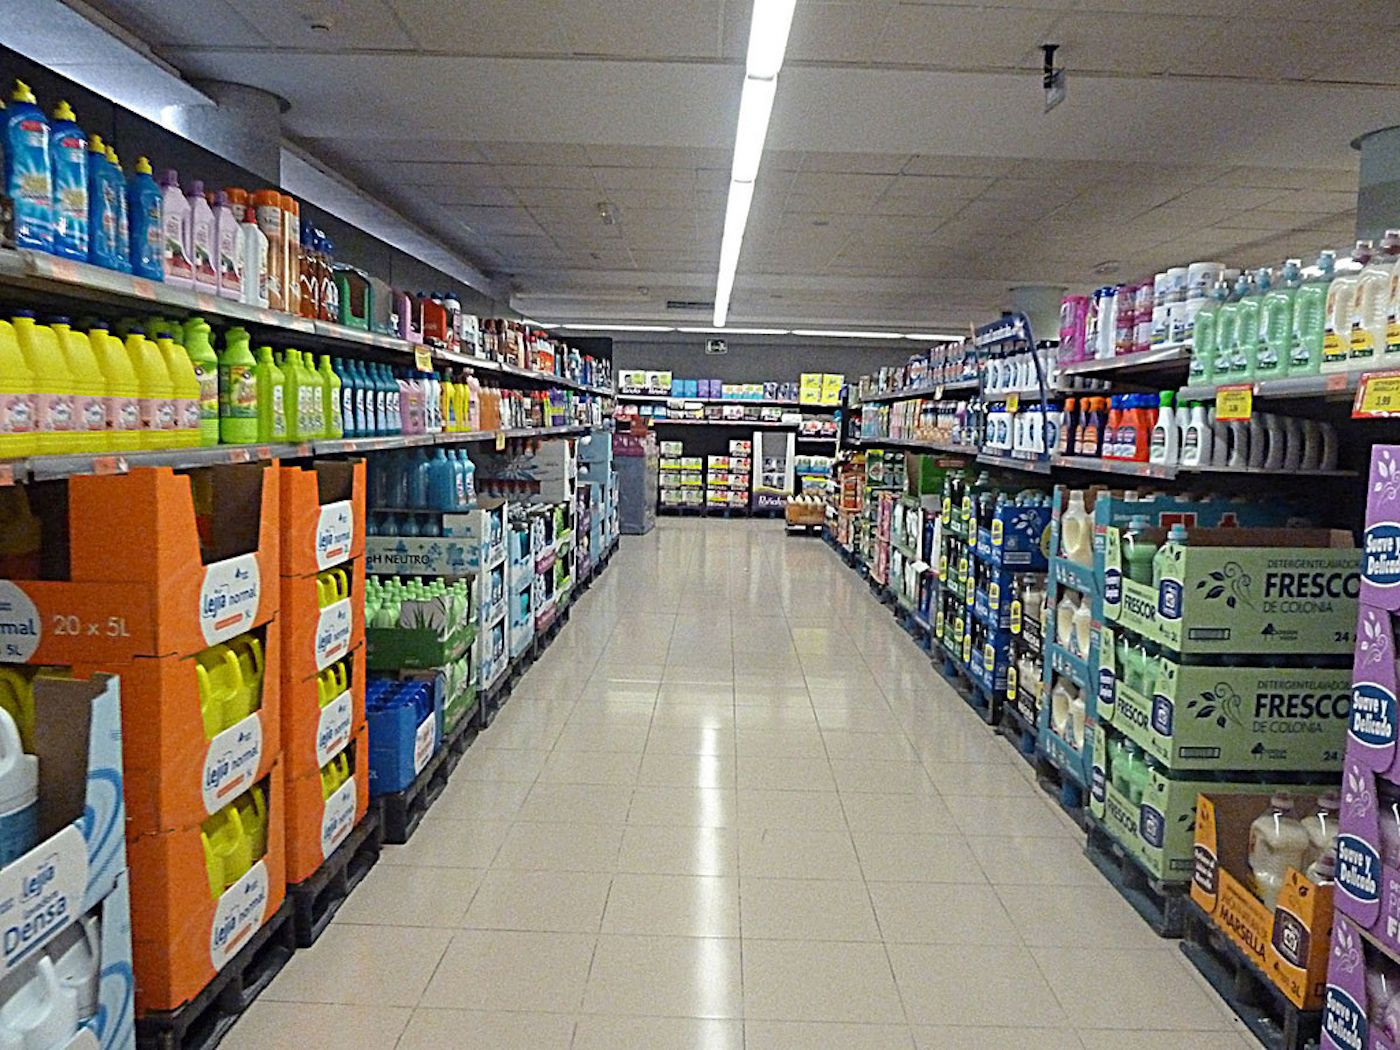 Pasillo de uno de los supermercados de Mercadona en Barcelona en una imagen de archivo / MERCADONA